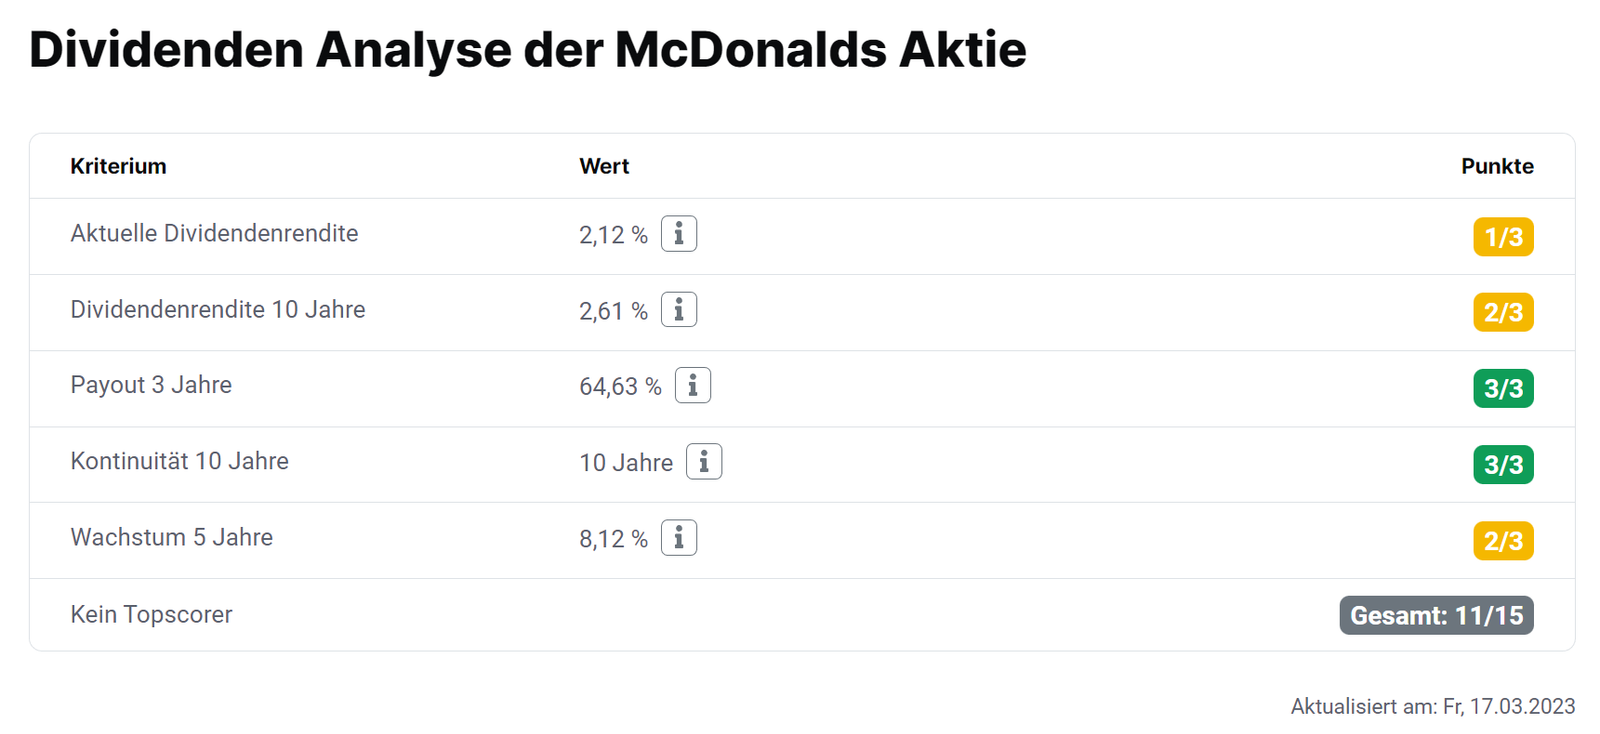 Dividenden Analyse der McDonalds Aktie im aktien.guide